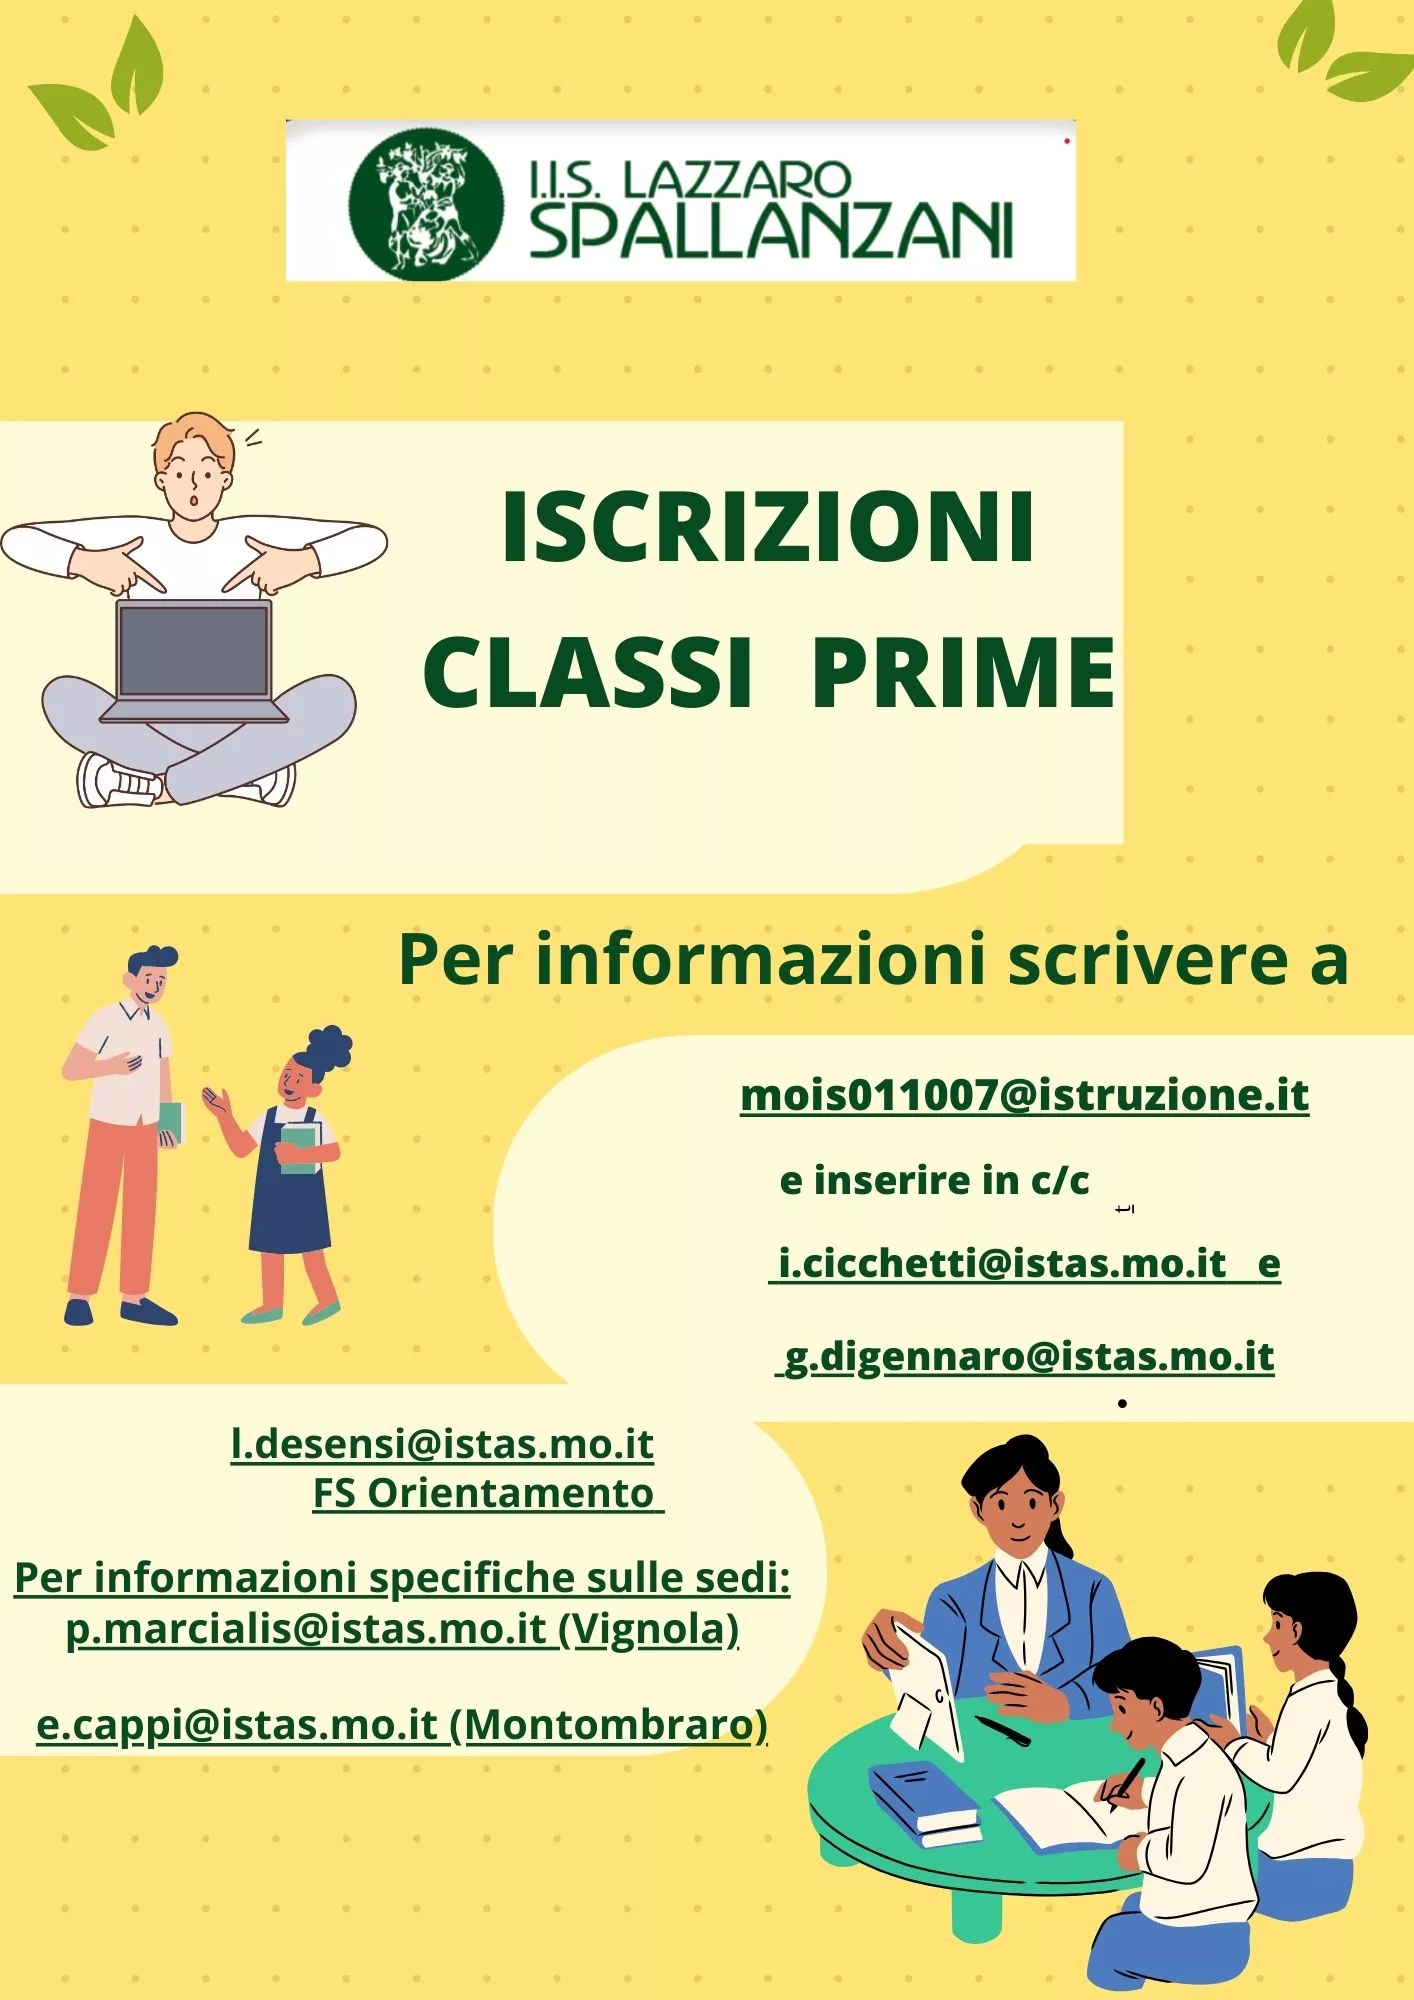 Istituto di Istruzione Superiore Lazzaro Spallanzani | ISCRIZIONI CLASSI PRIME - PROCEDURA